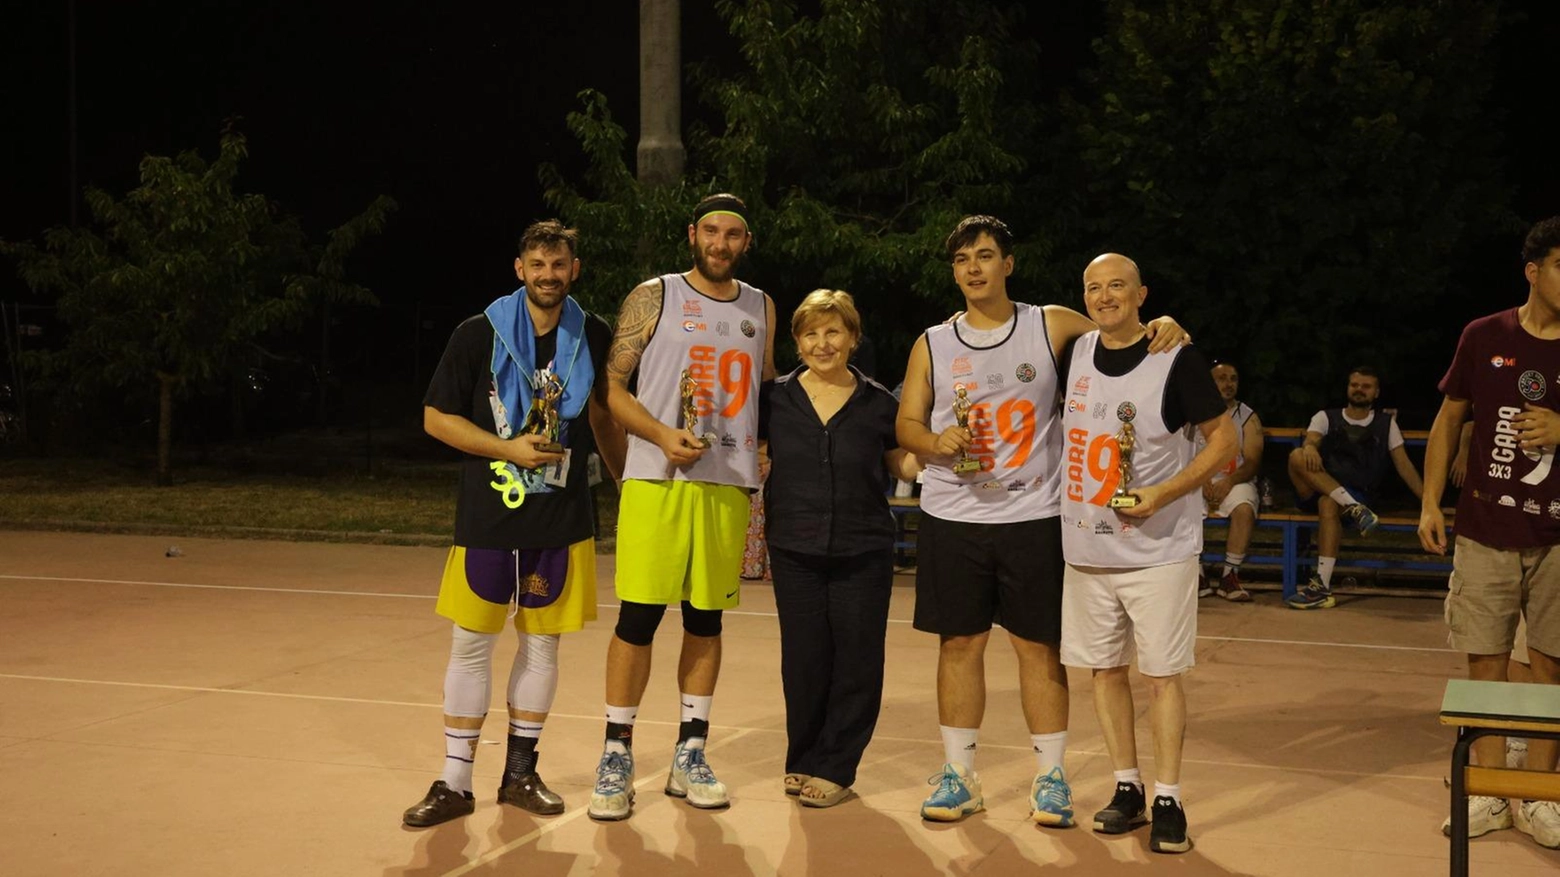 La squadra "Gas" vince il torneo promosso dal Basket Gubbio